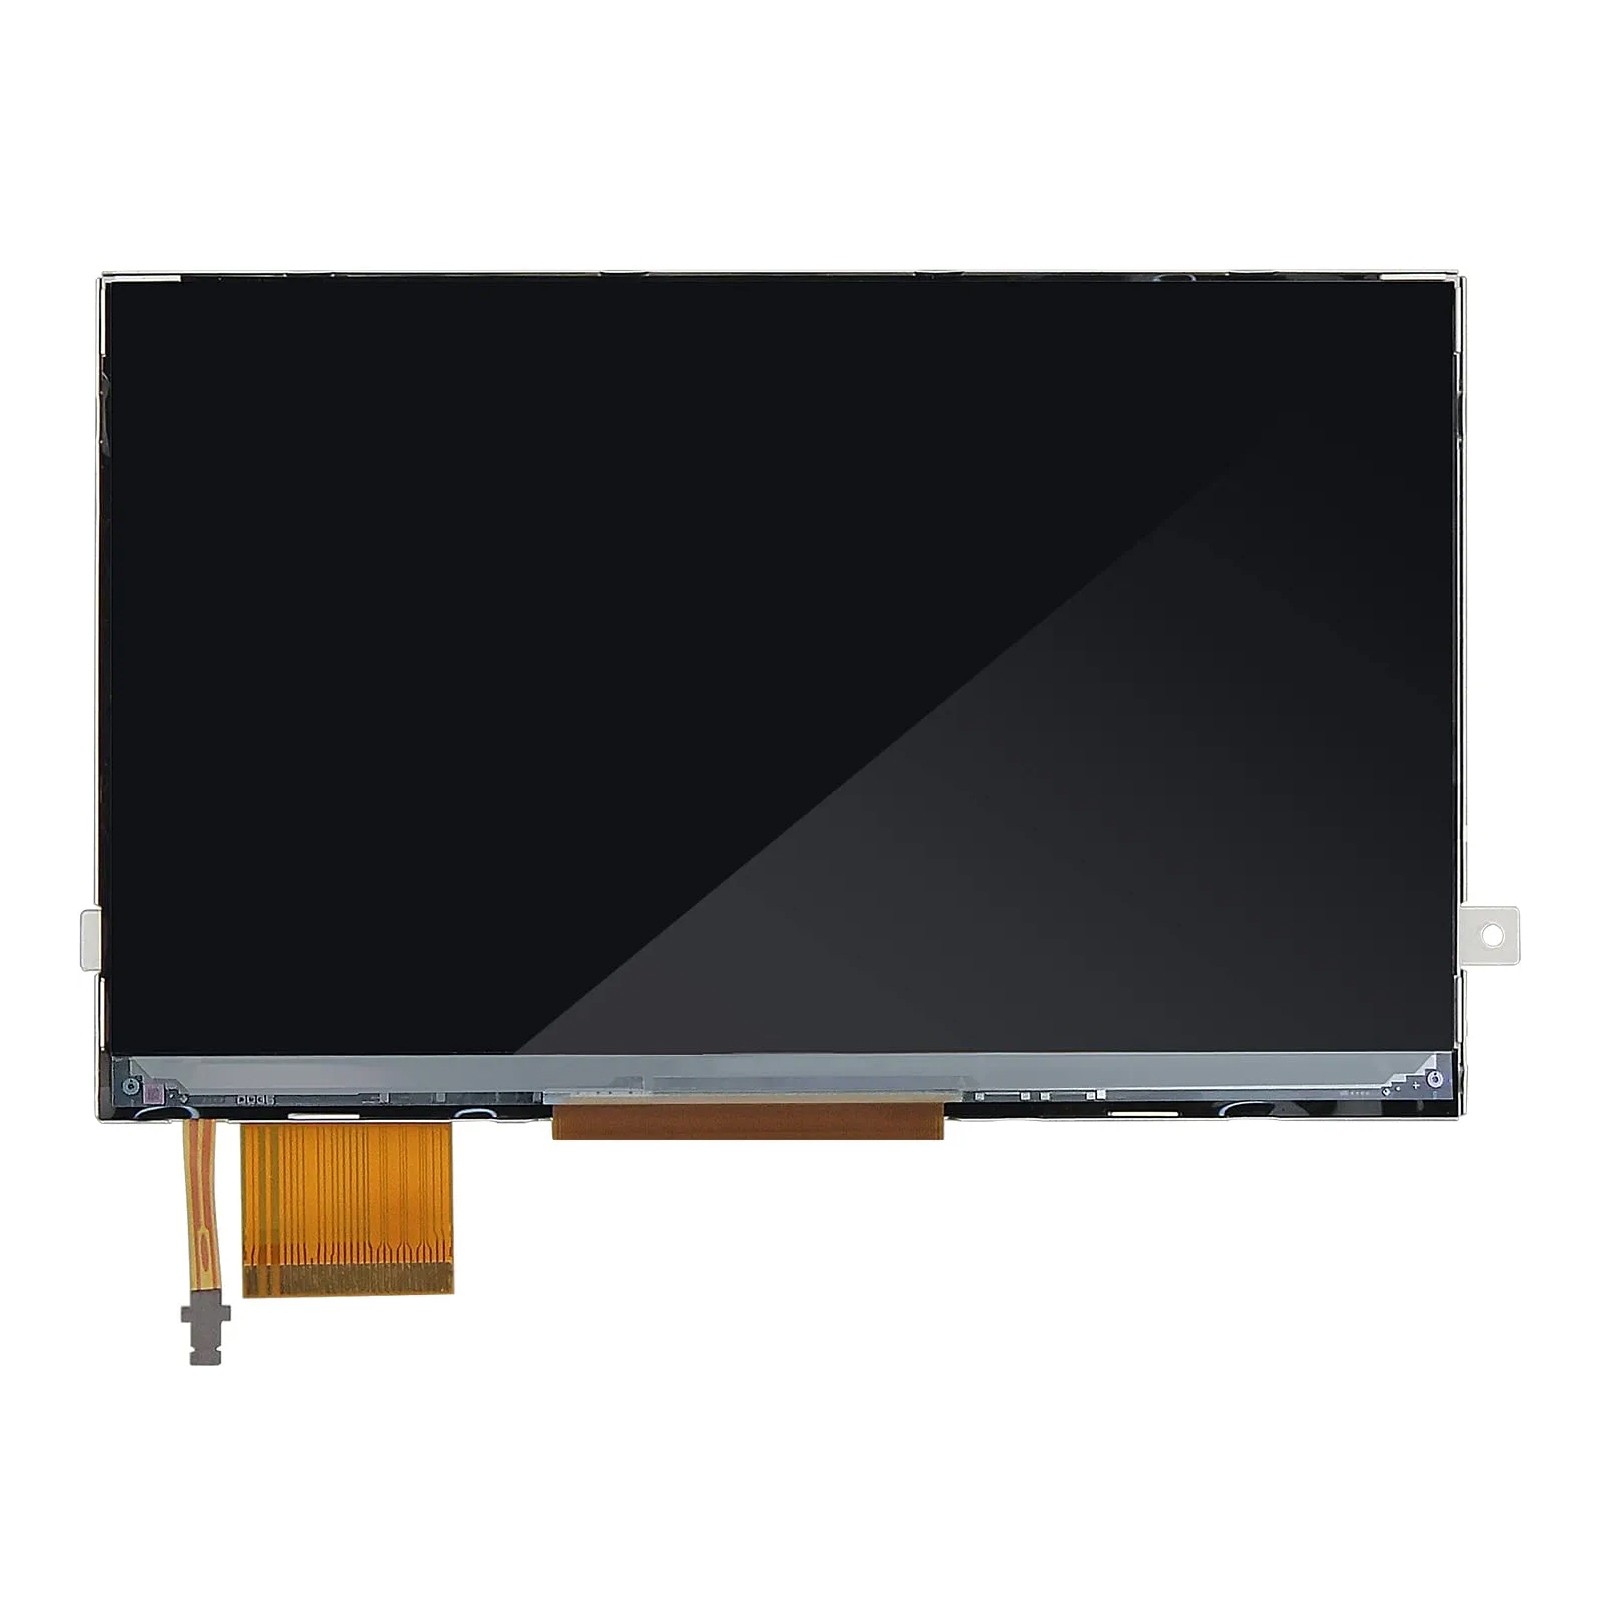 LCD Bildschirm Display Ersatz für Sony PSP 3000 (LQODZC0031L)